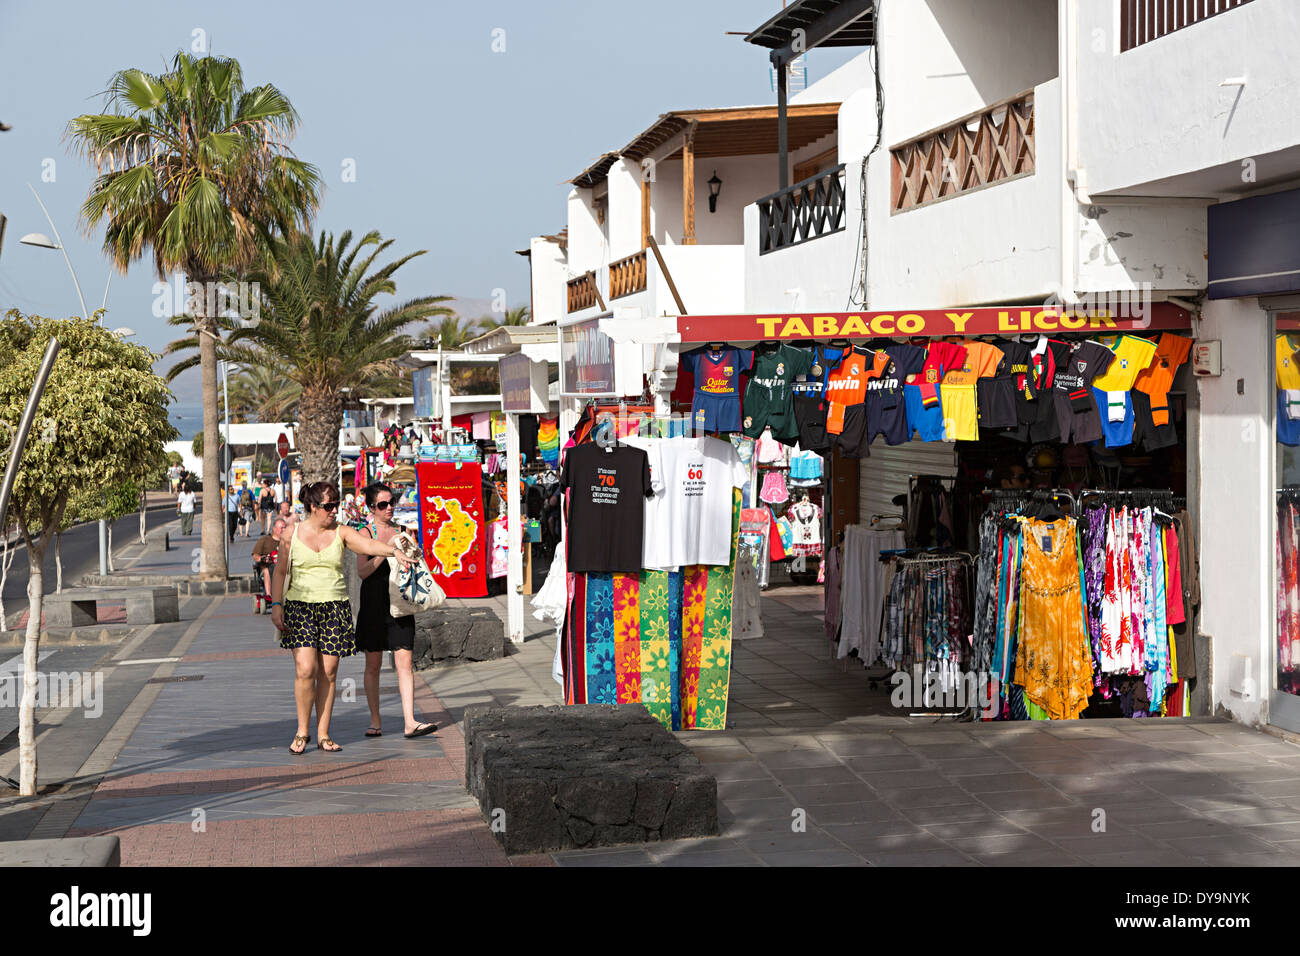 Des boutiques sur la mer et les gens qui marchent, Puerto Carmen, Lanzarote, îles Canaries, Espagne Banque D'Images